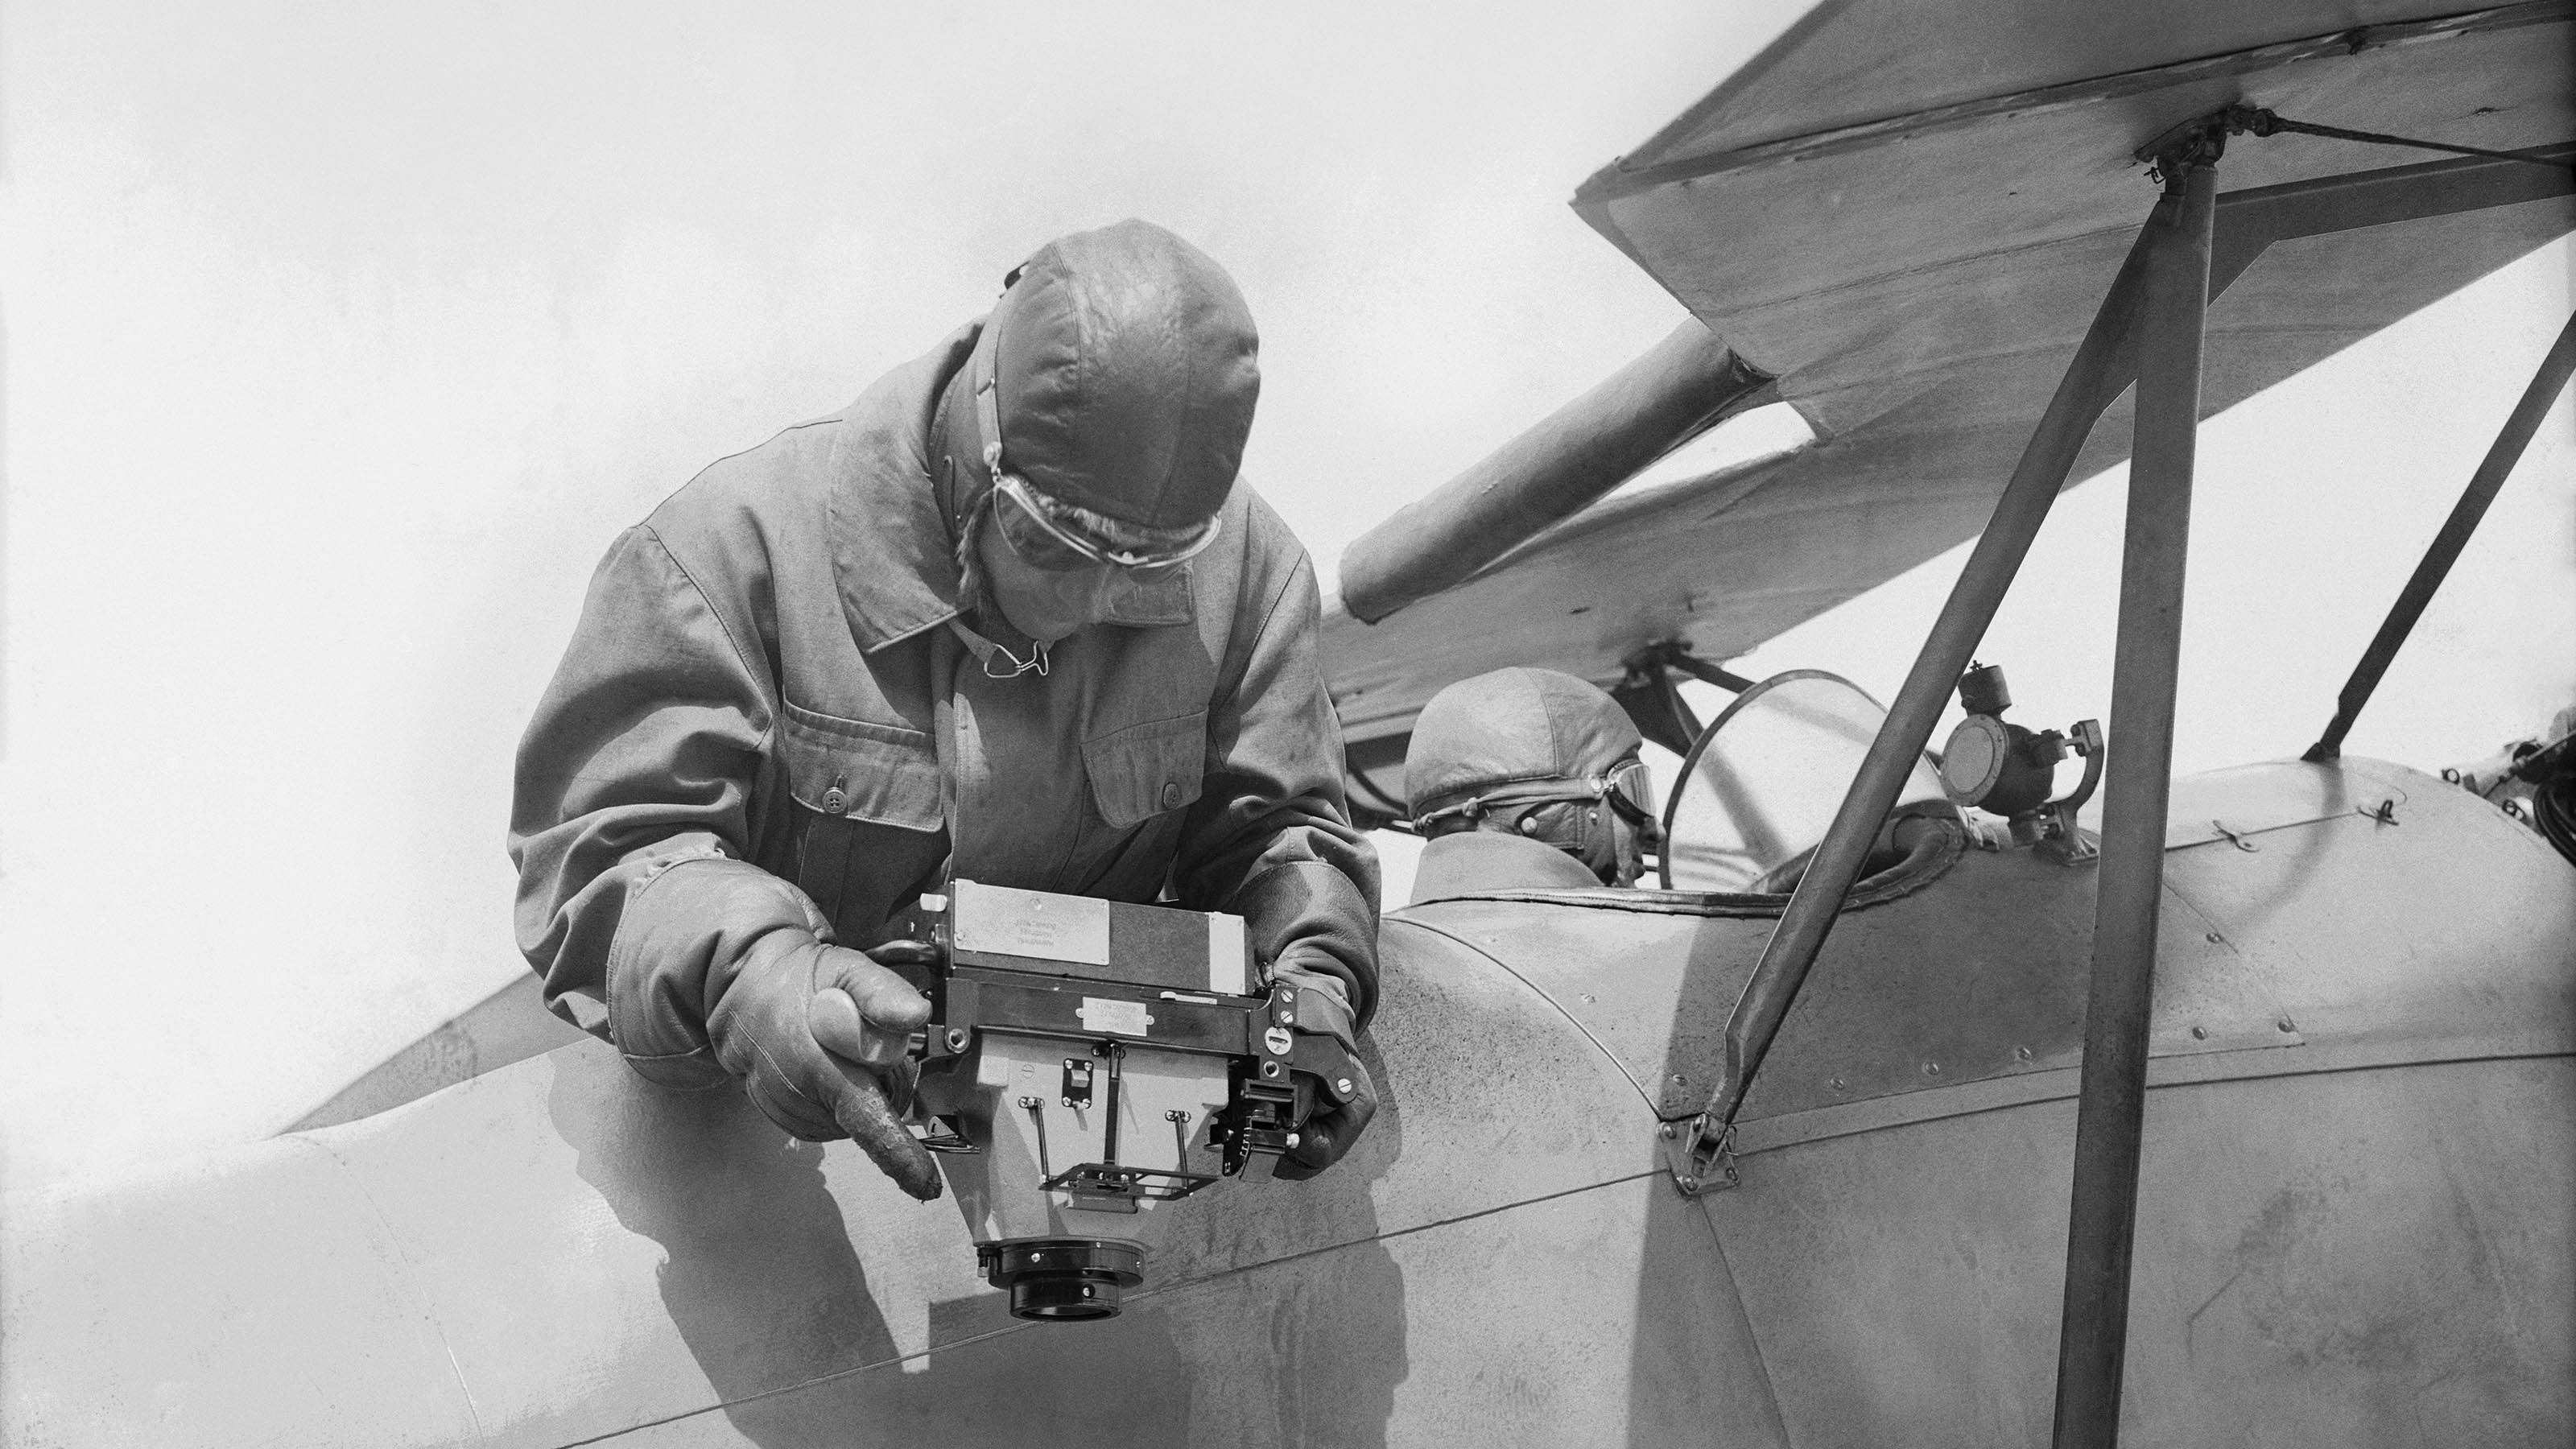 Ein Pilot sitzt am Steuer eines Flugzeugs, während der Beobachter die Luftbildkamera von Hand über Bord hält und nach unten fotografiert.